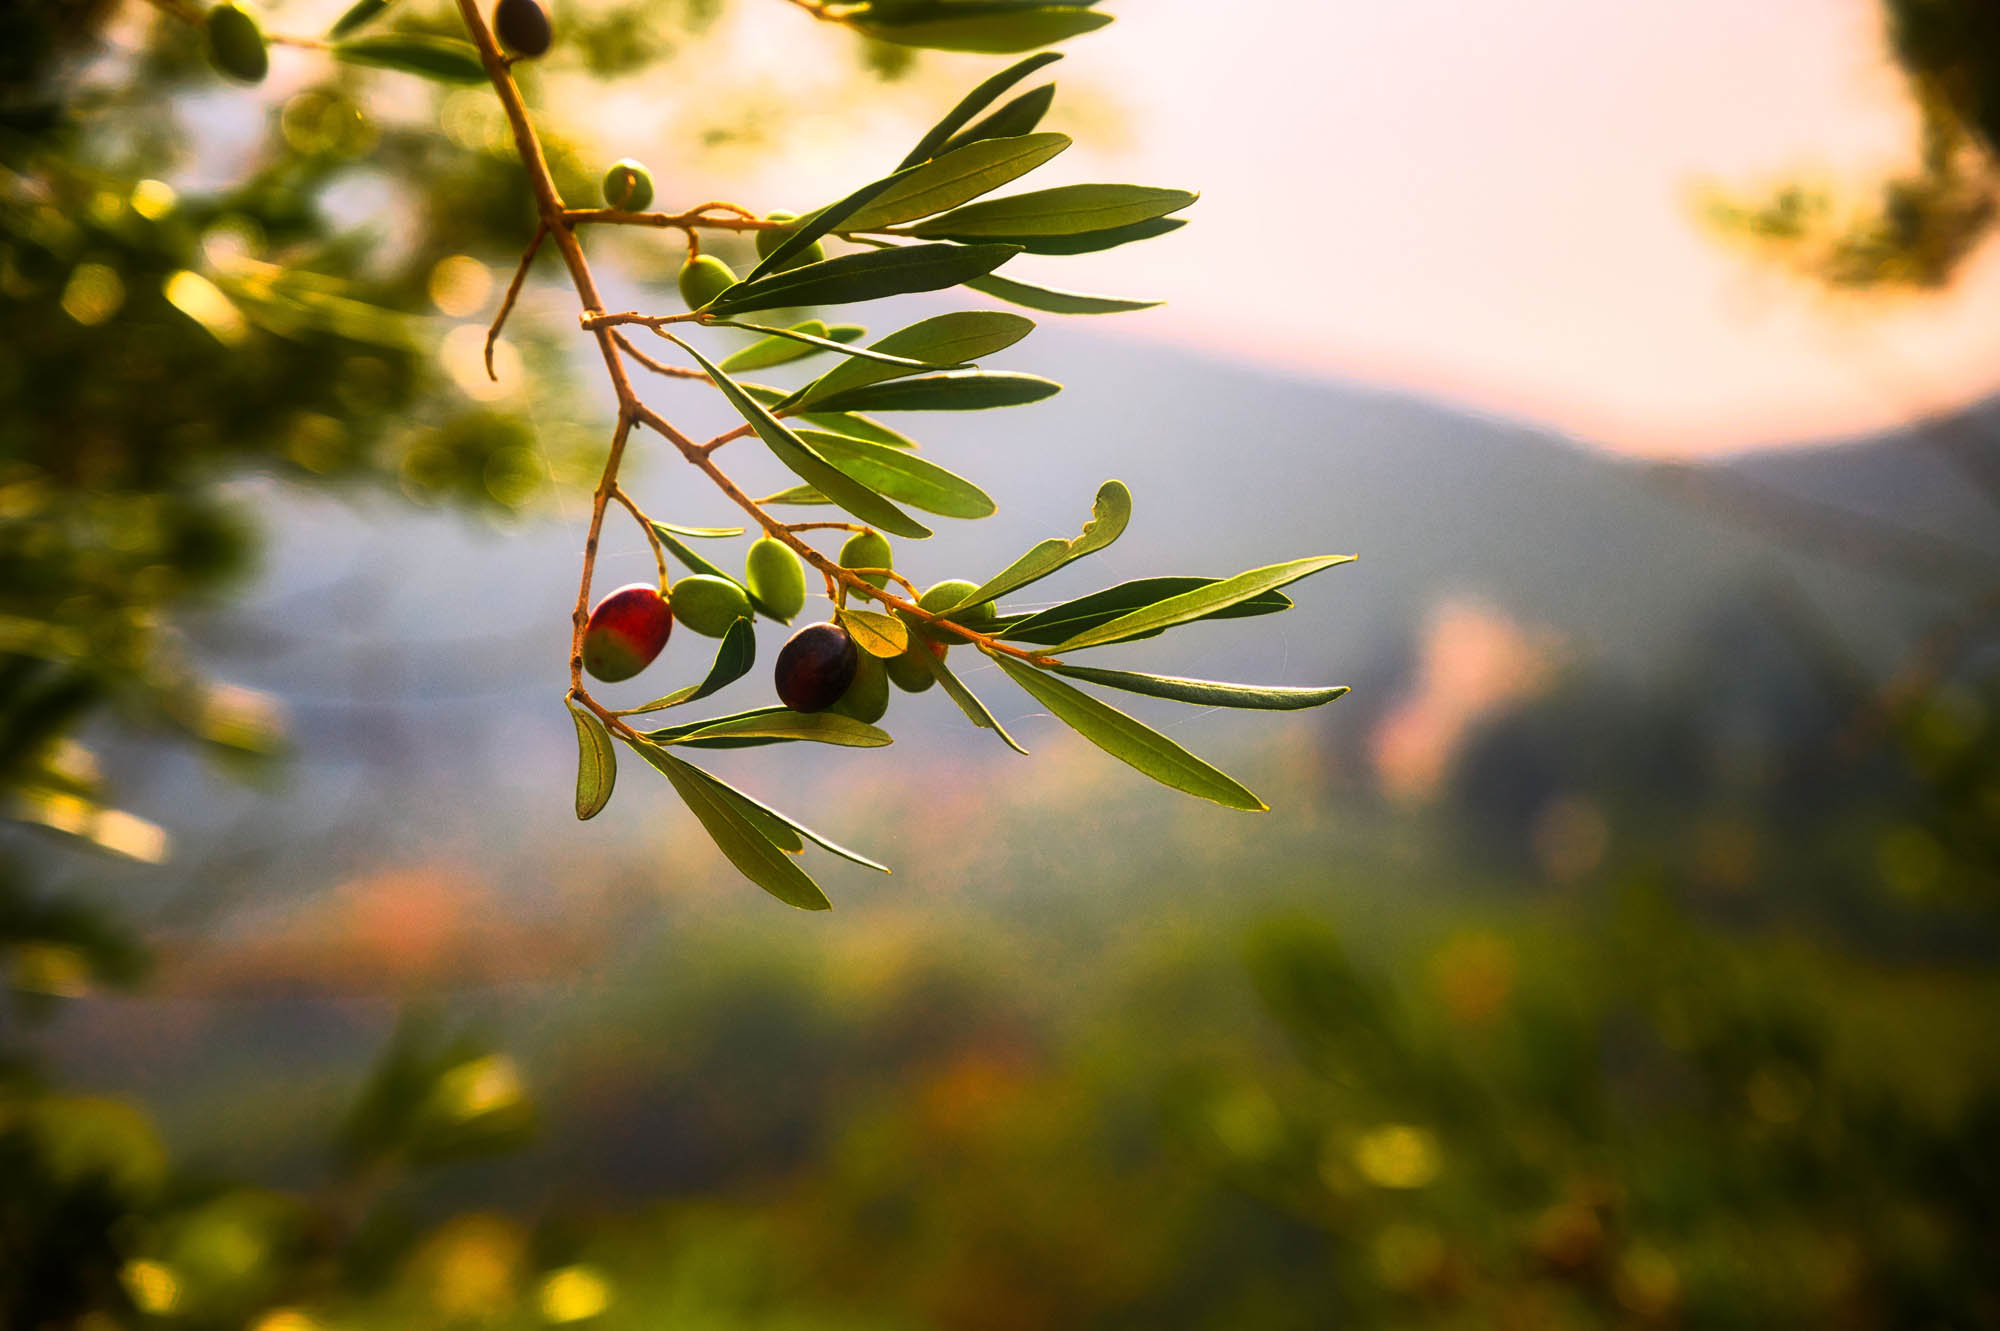 gałązka drzewa oliwnego z dojrzewającymi w słońcu oliwkami w różnym stadium dojrzewania, gaj liwny